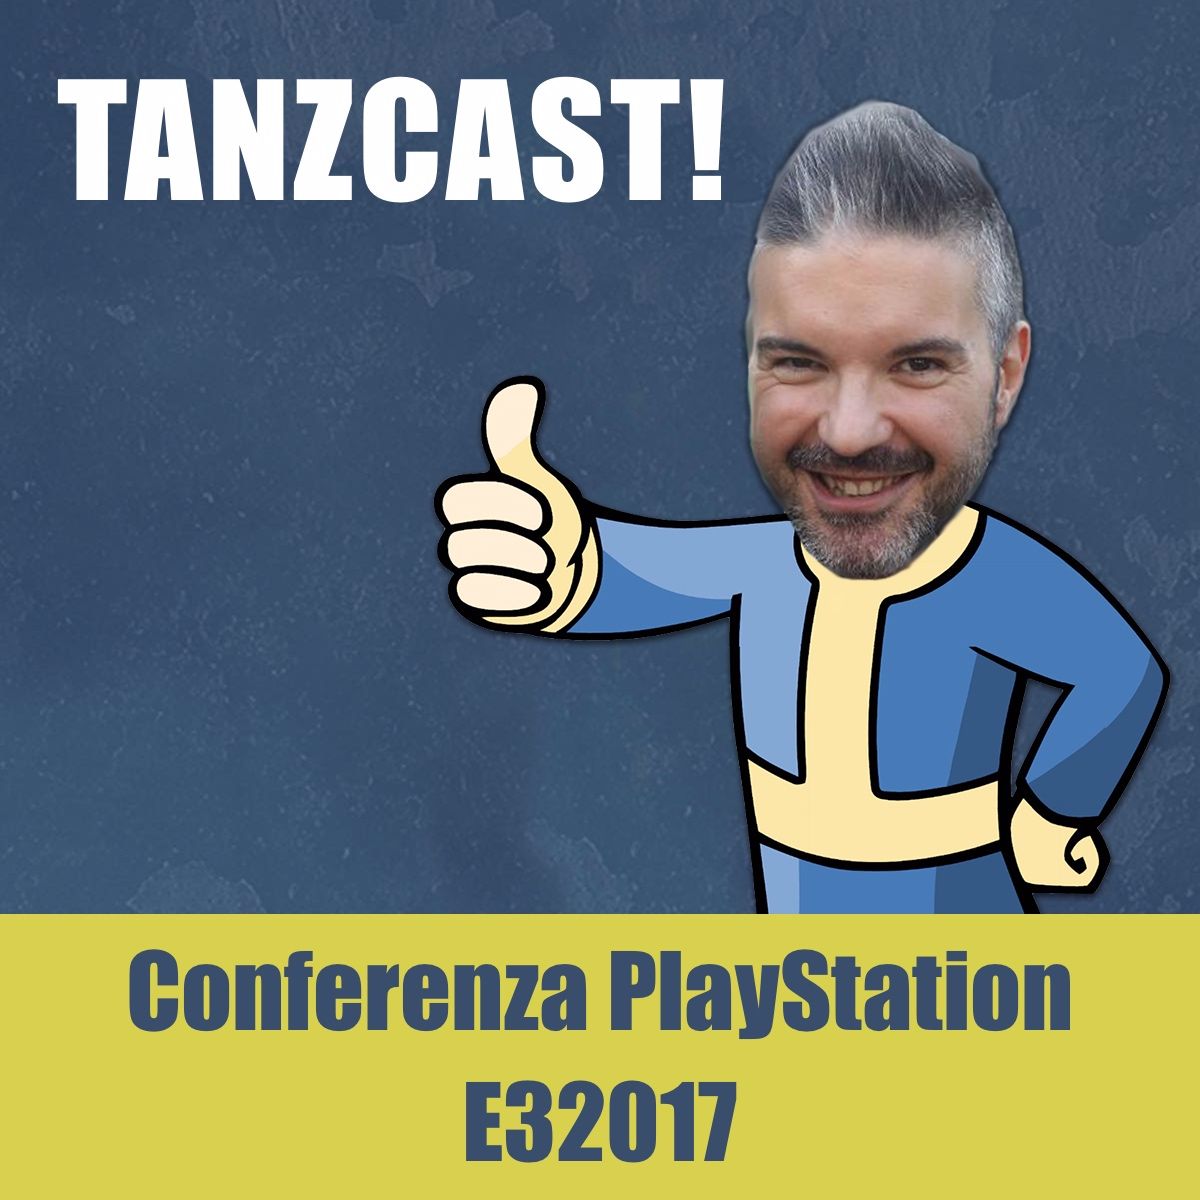 Conferenza PlayStation 4 all’E3 2017: commento a caldo! - Videogiochi #14